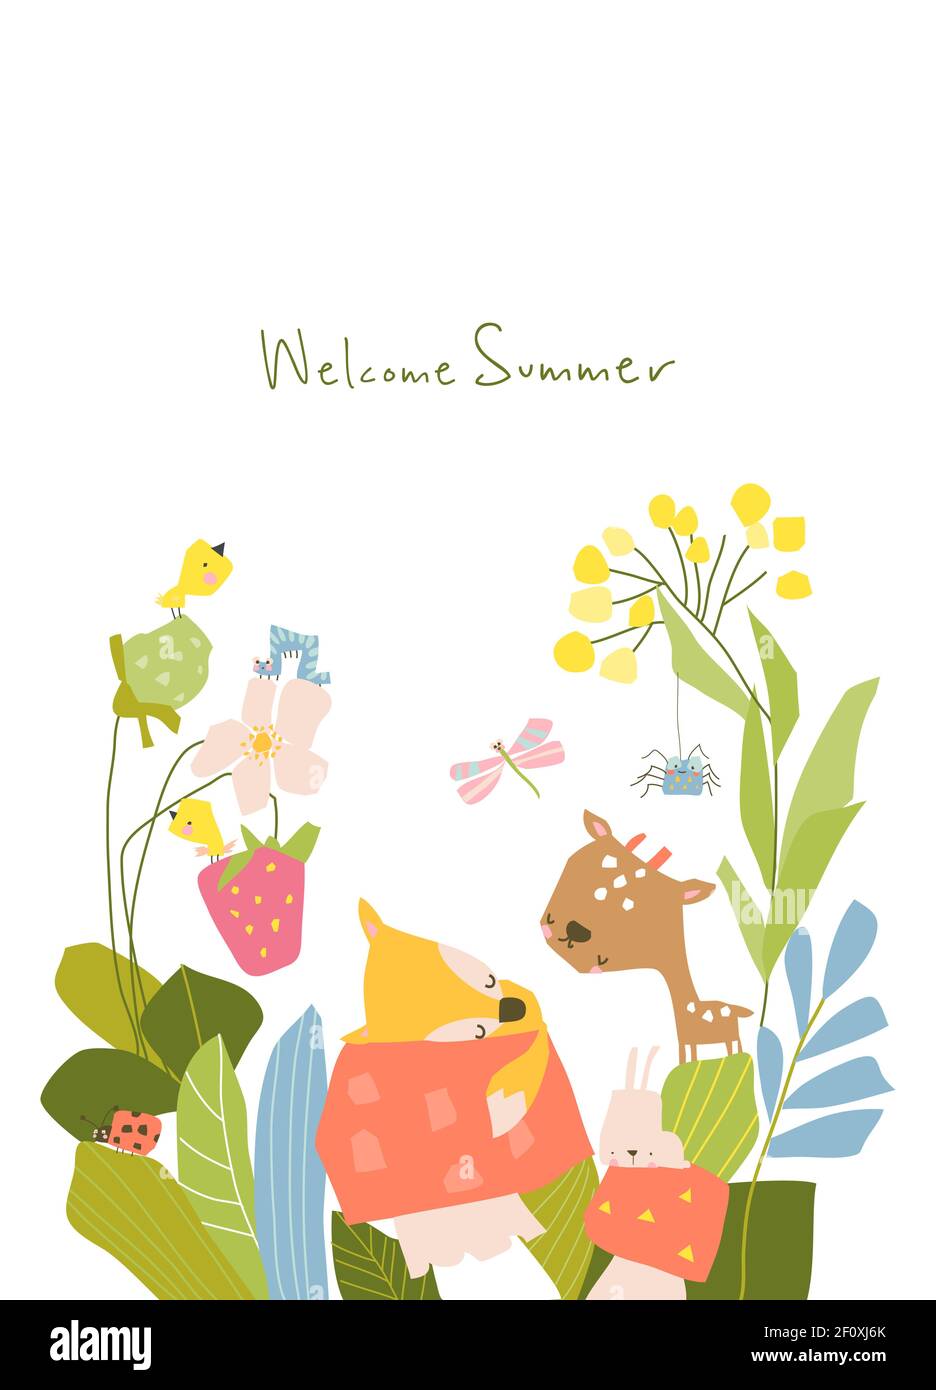 Kleine Cartoon-Tiere im Sommer Pflanzen und Blumen Stock-Vektorgrafik -  Alamy